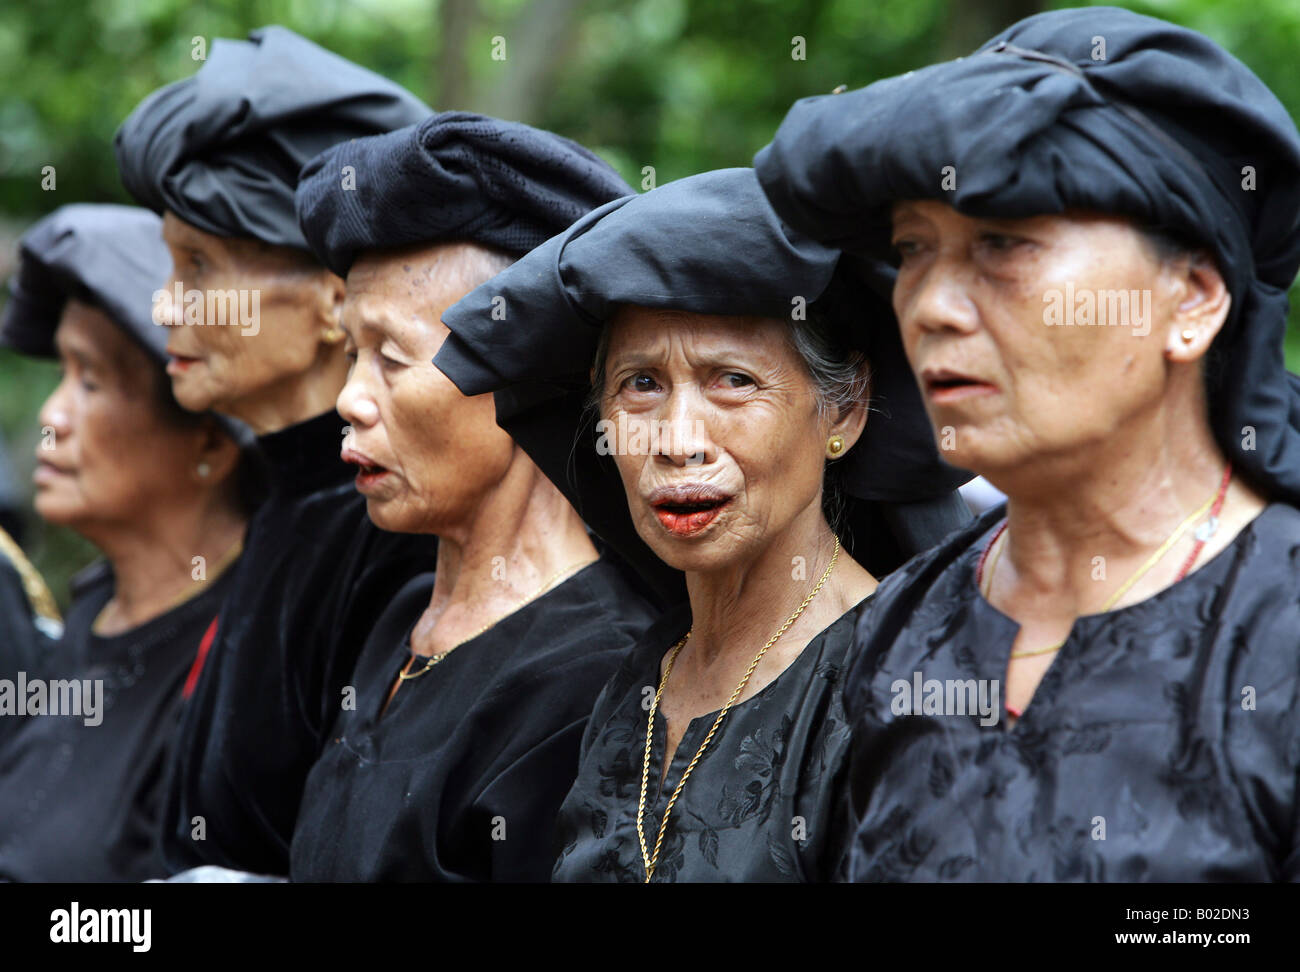 Tana Toraja de Sulawesi, Indonesia: funeral tradicional. Los miembros de la familia, parientes y amigos vestidos de negro luto Foto de stock